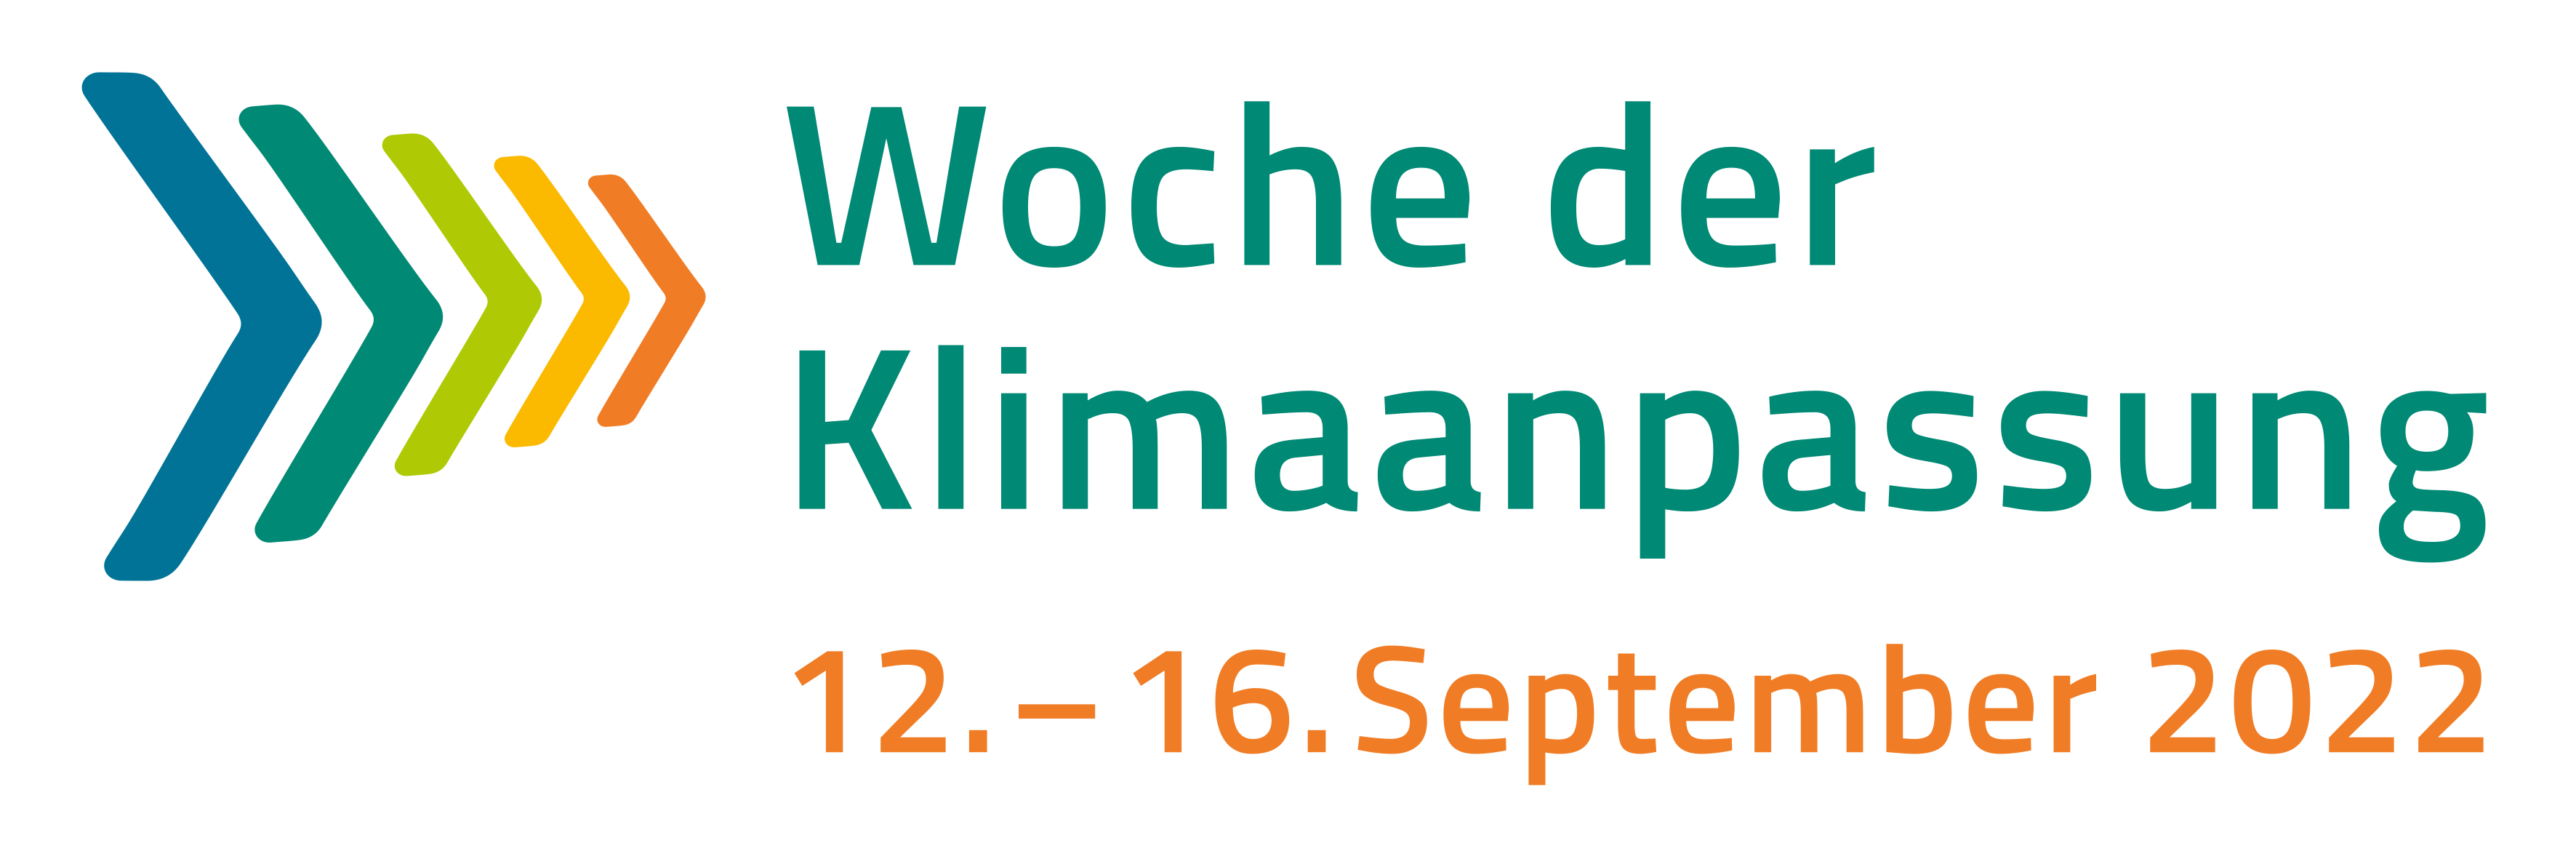 Logo Woche der Klimaanpassung